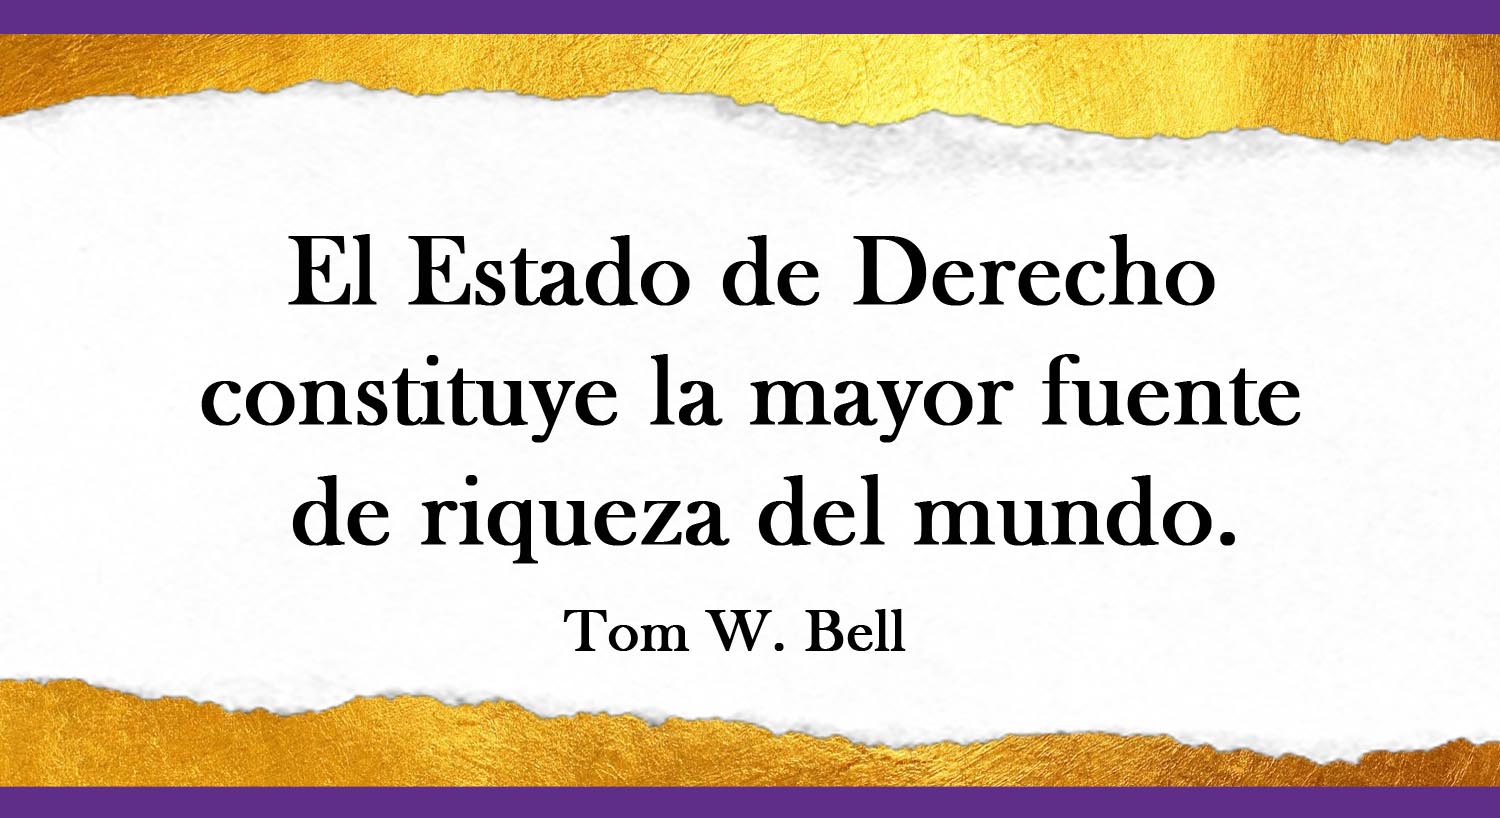 El Estado de Derecho constituye la mayor fuente de riqueza del mundo - Tom W. Bell